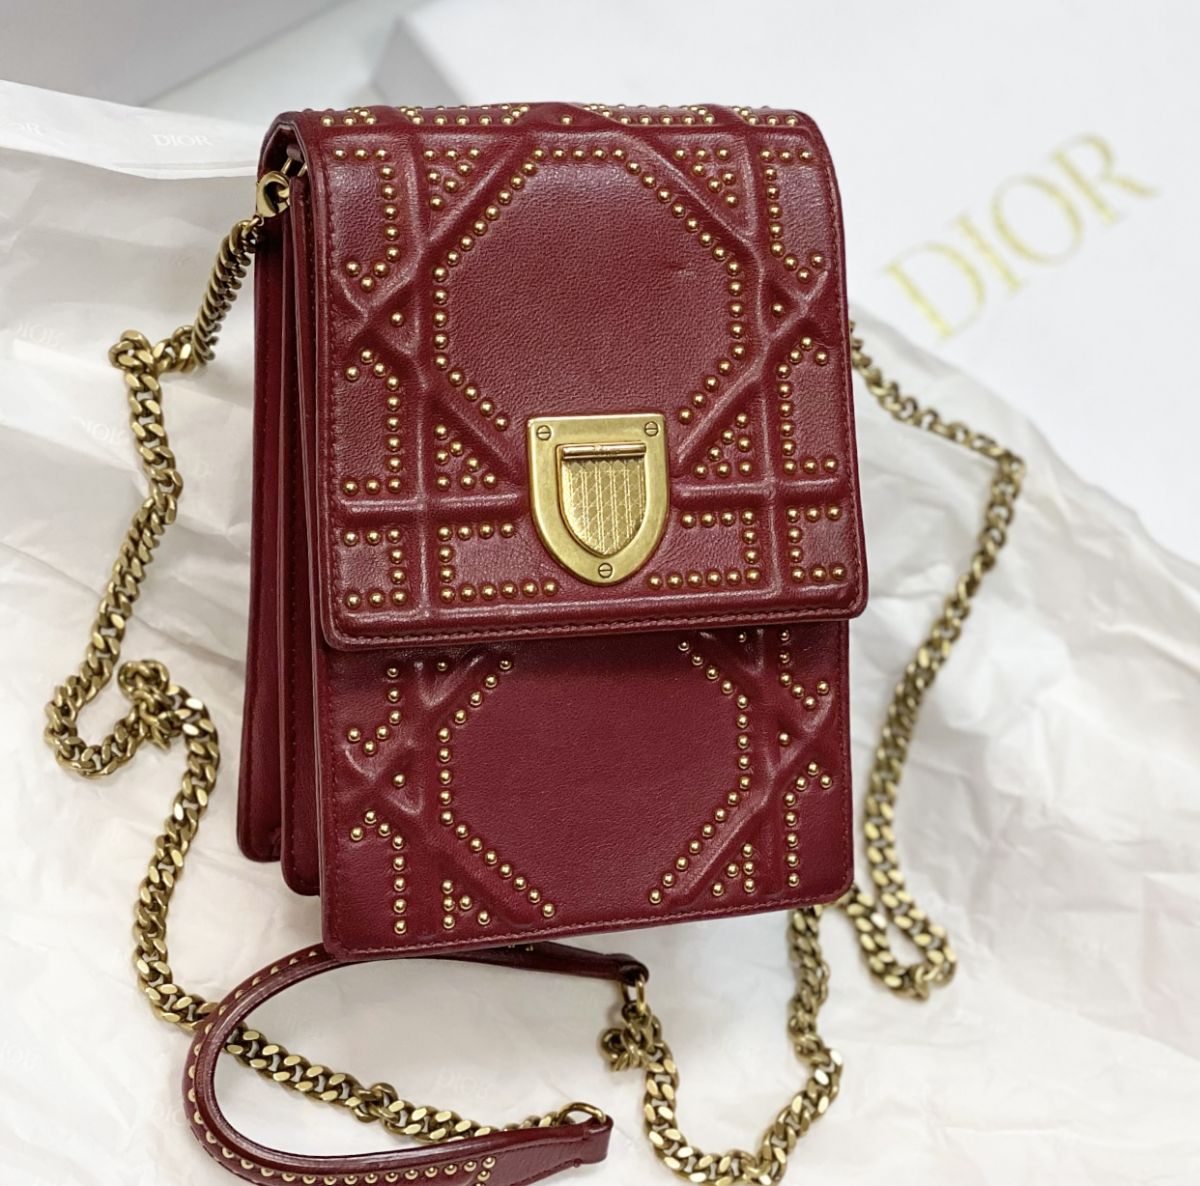 Сумка Christian Dior размер 12/17 цена 46 155 руб 